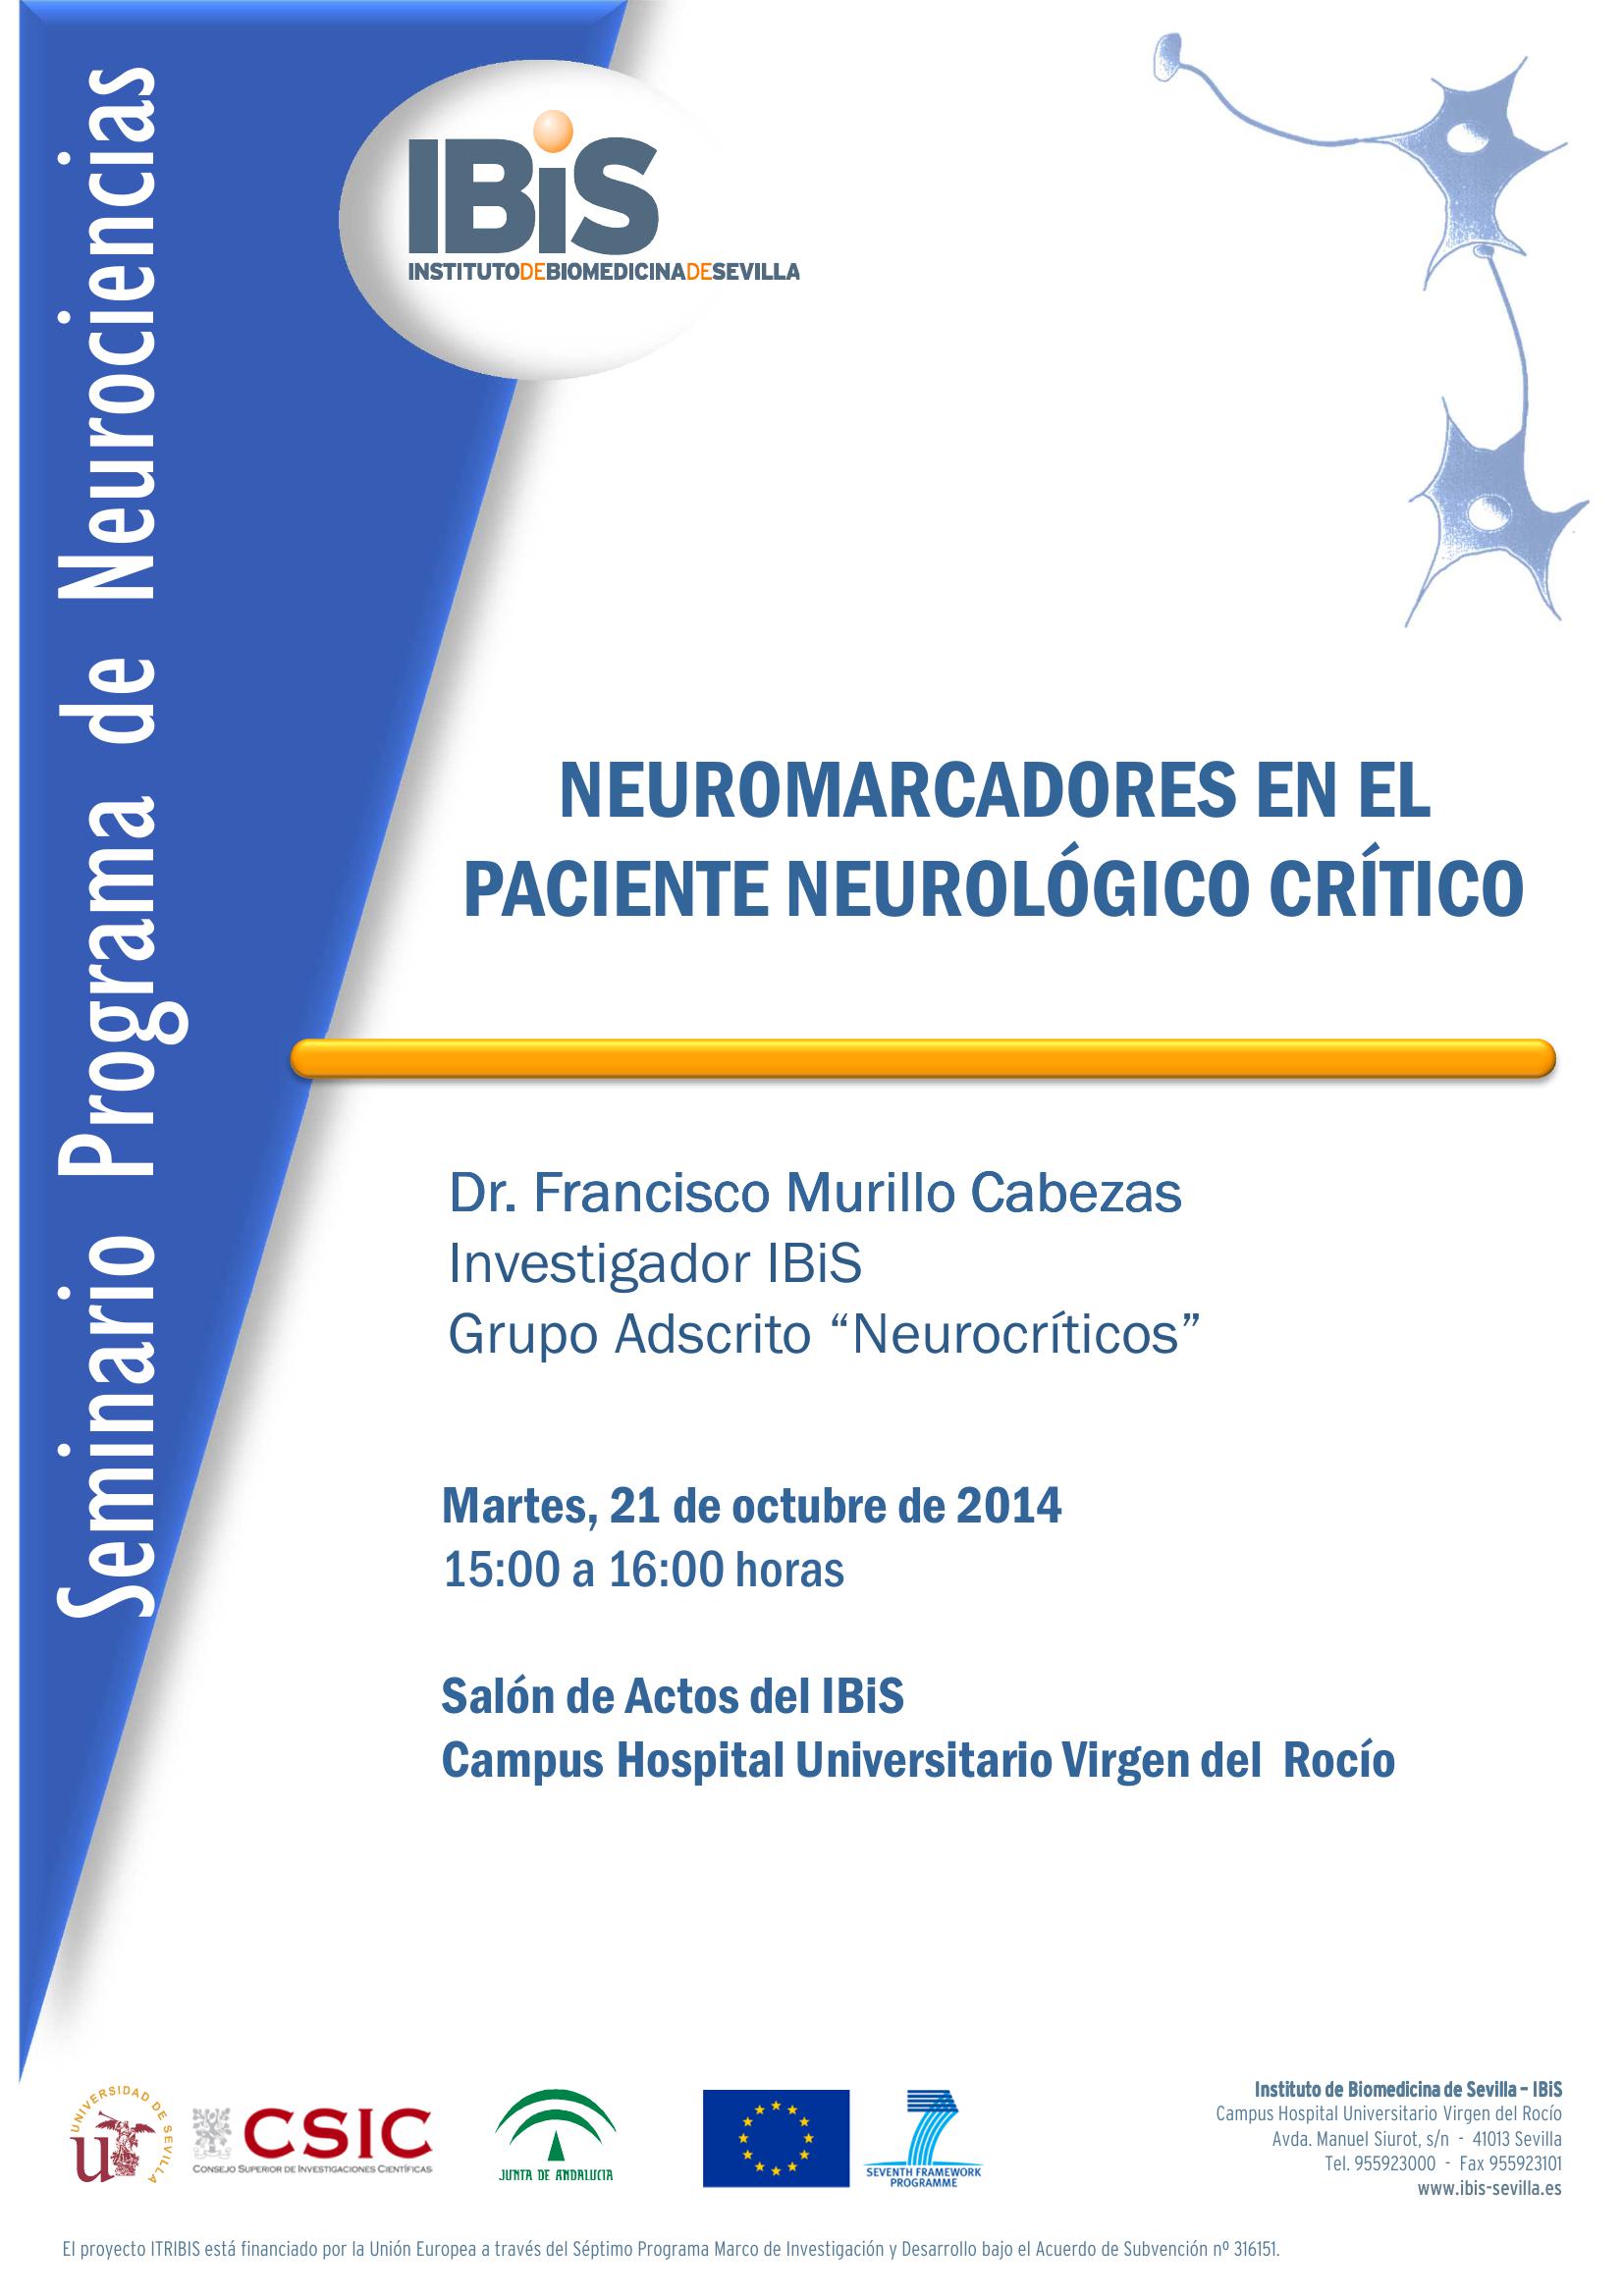 Poster: NEUROMARCADORES EN EL PACIENTE NEUROLÓGICO CRÍTICO